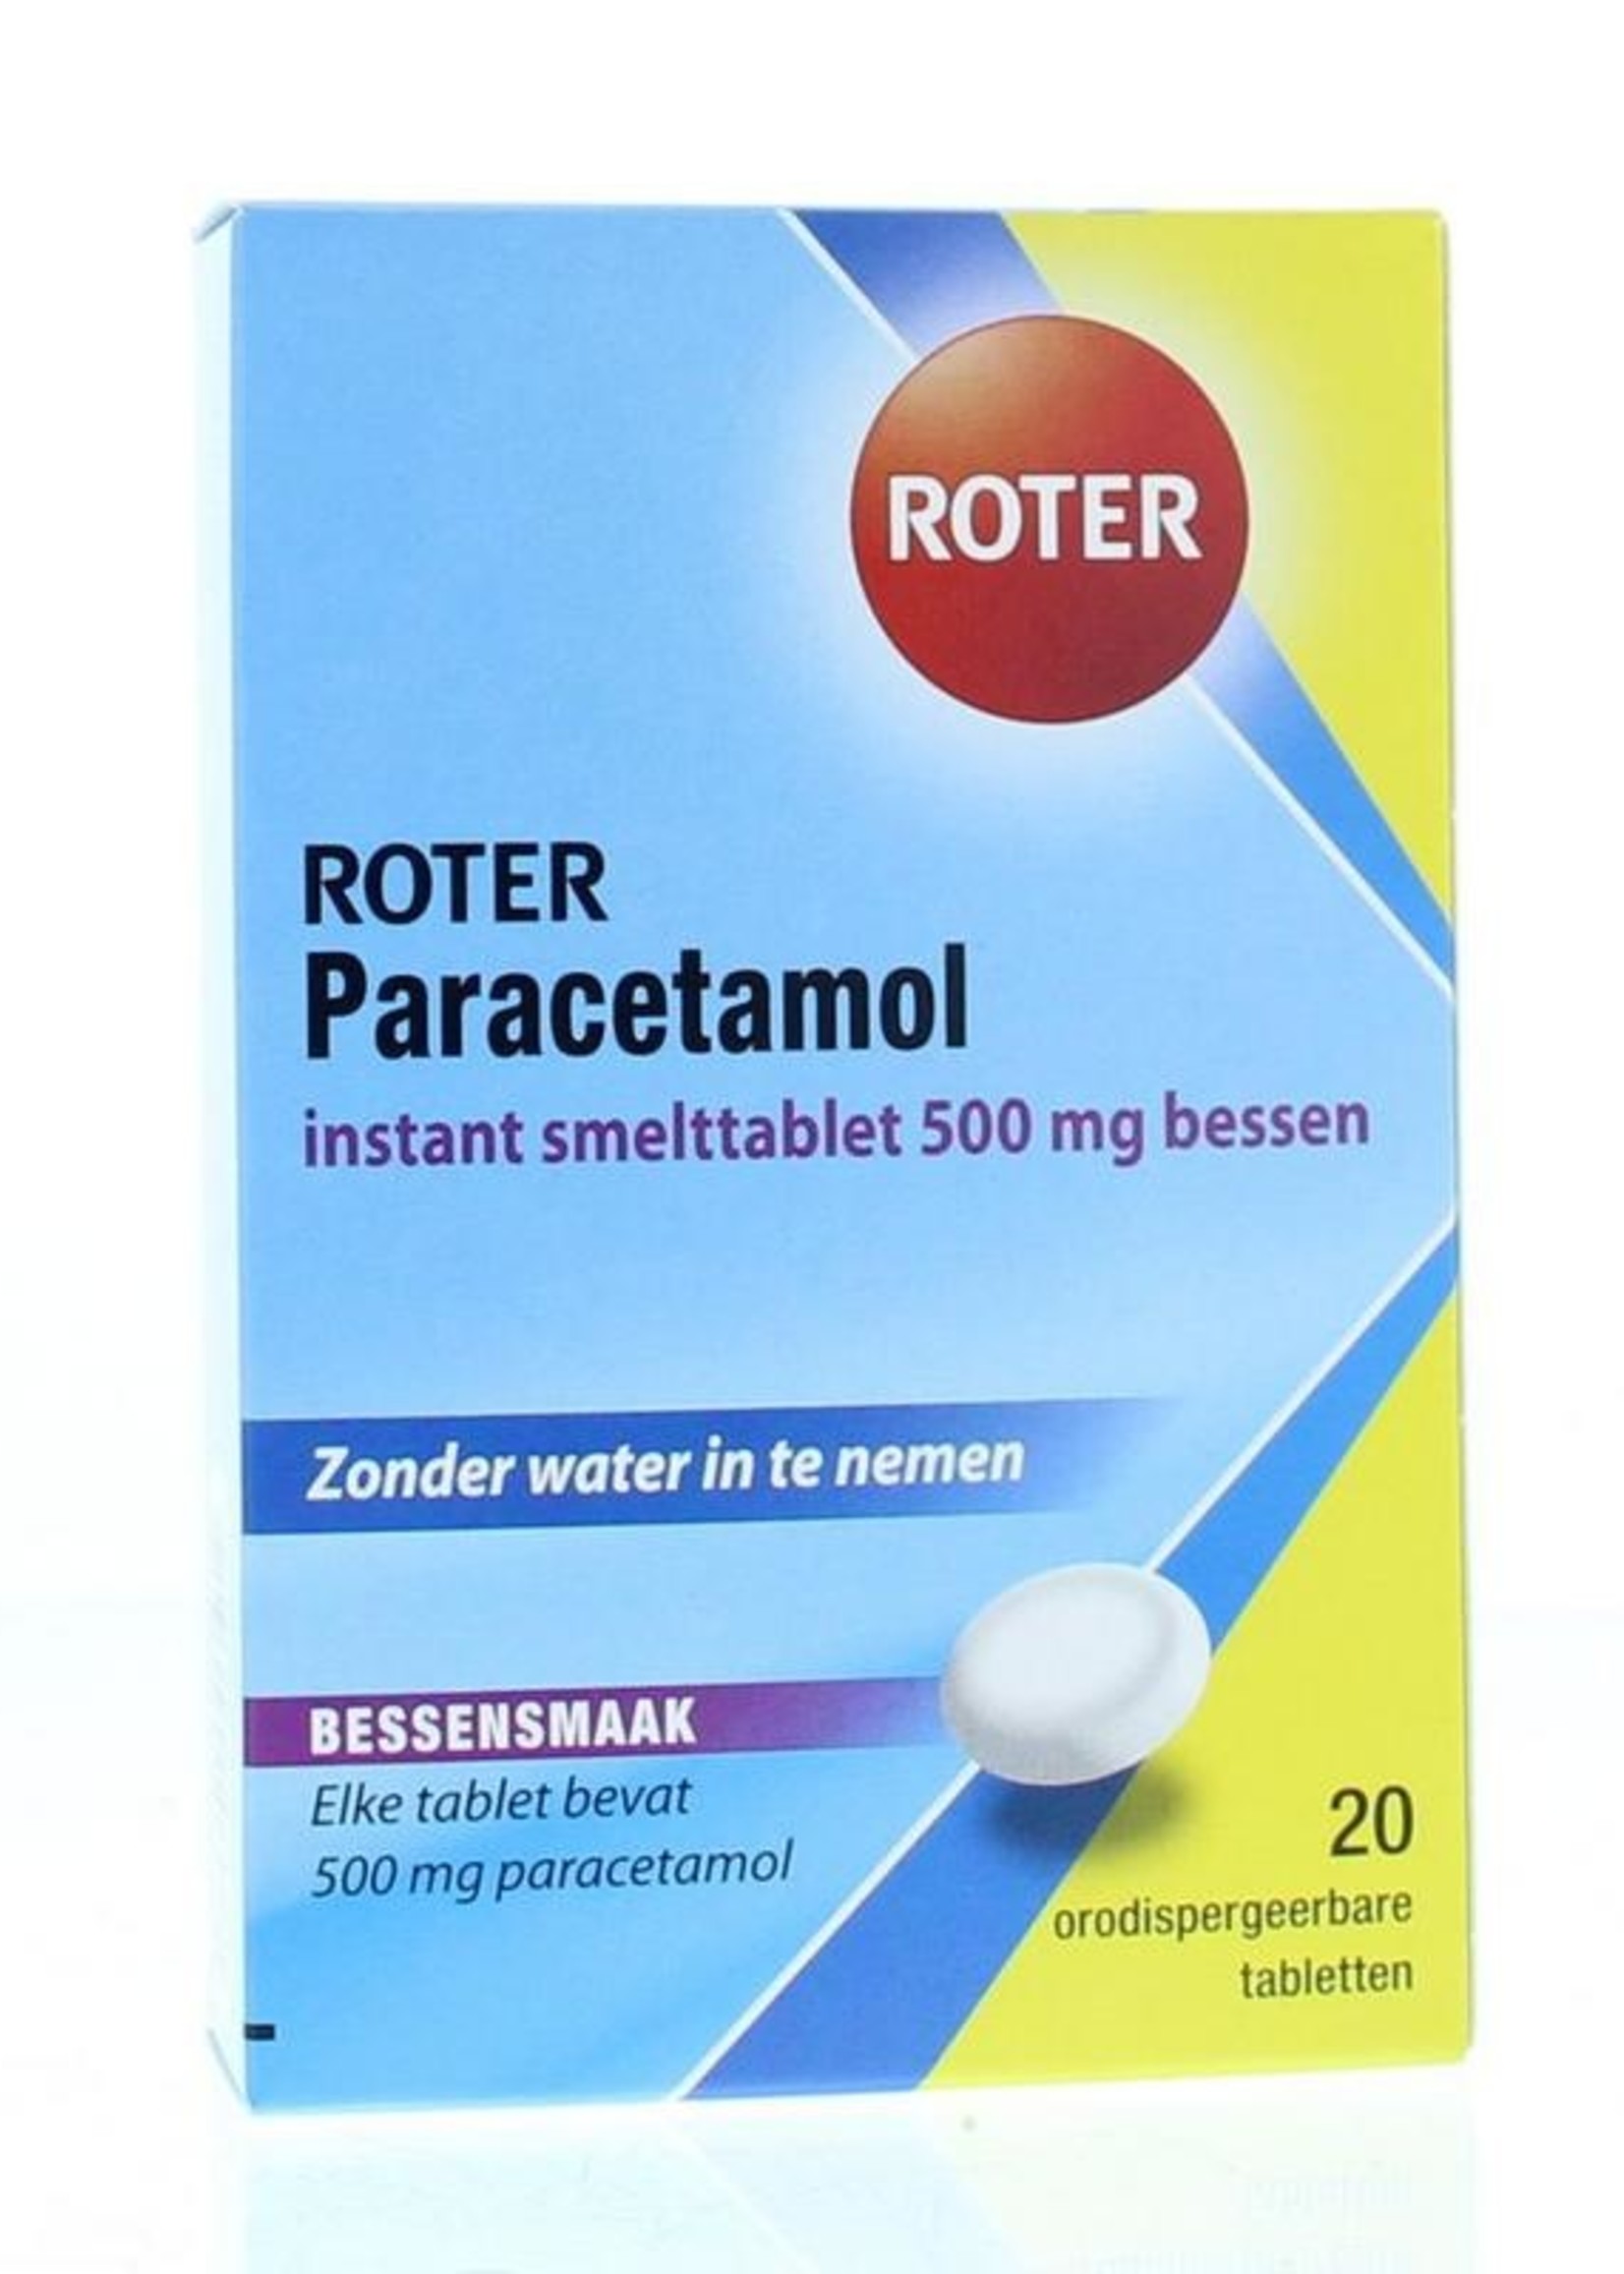 Roter paracetamol instant smelttablet 500 mg bessen 20 tabletten